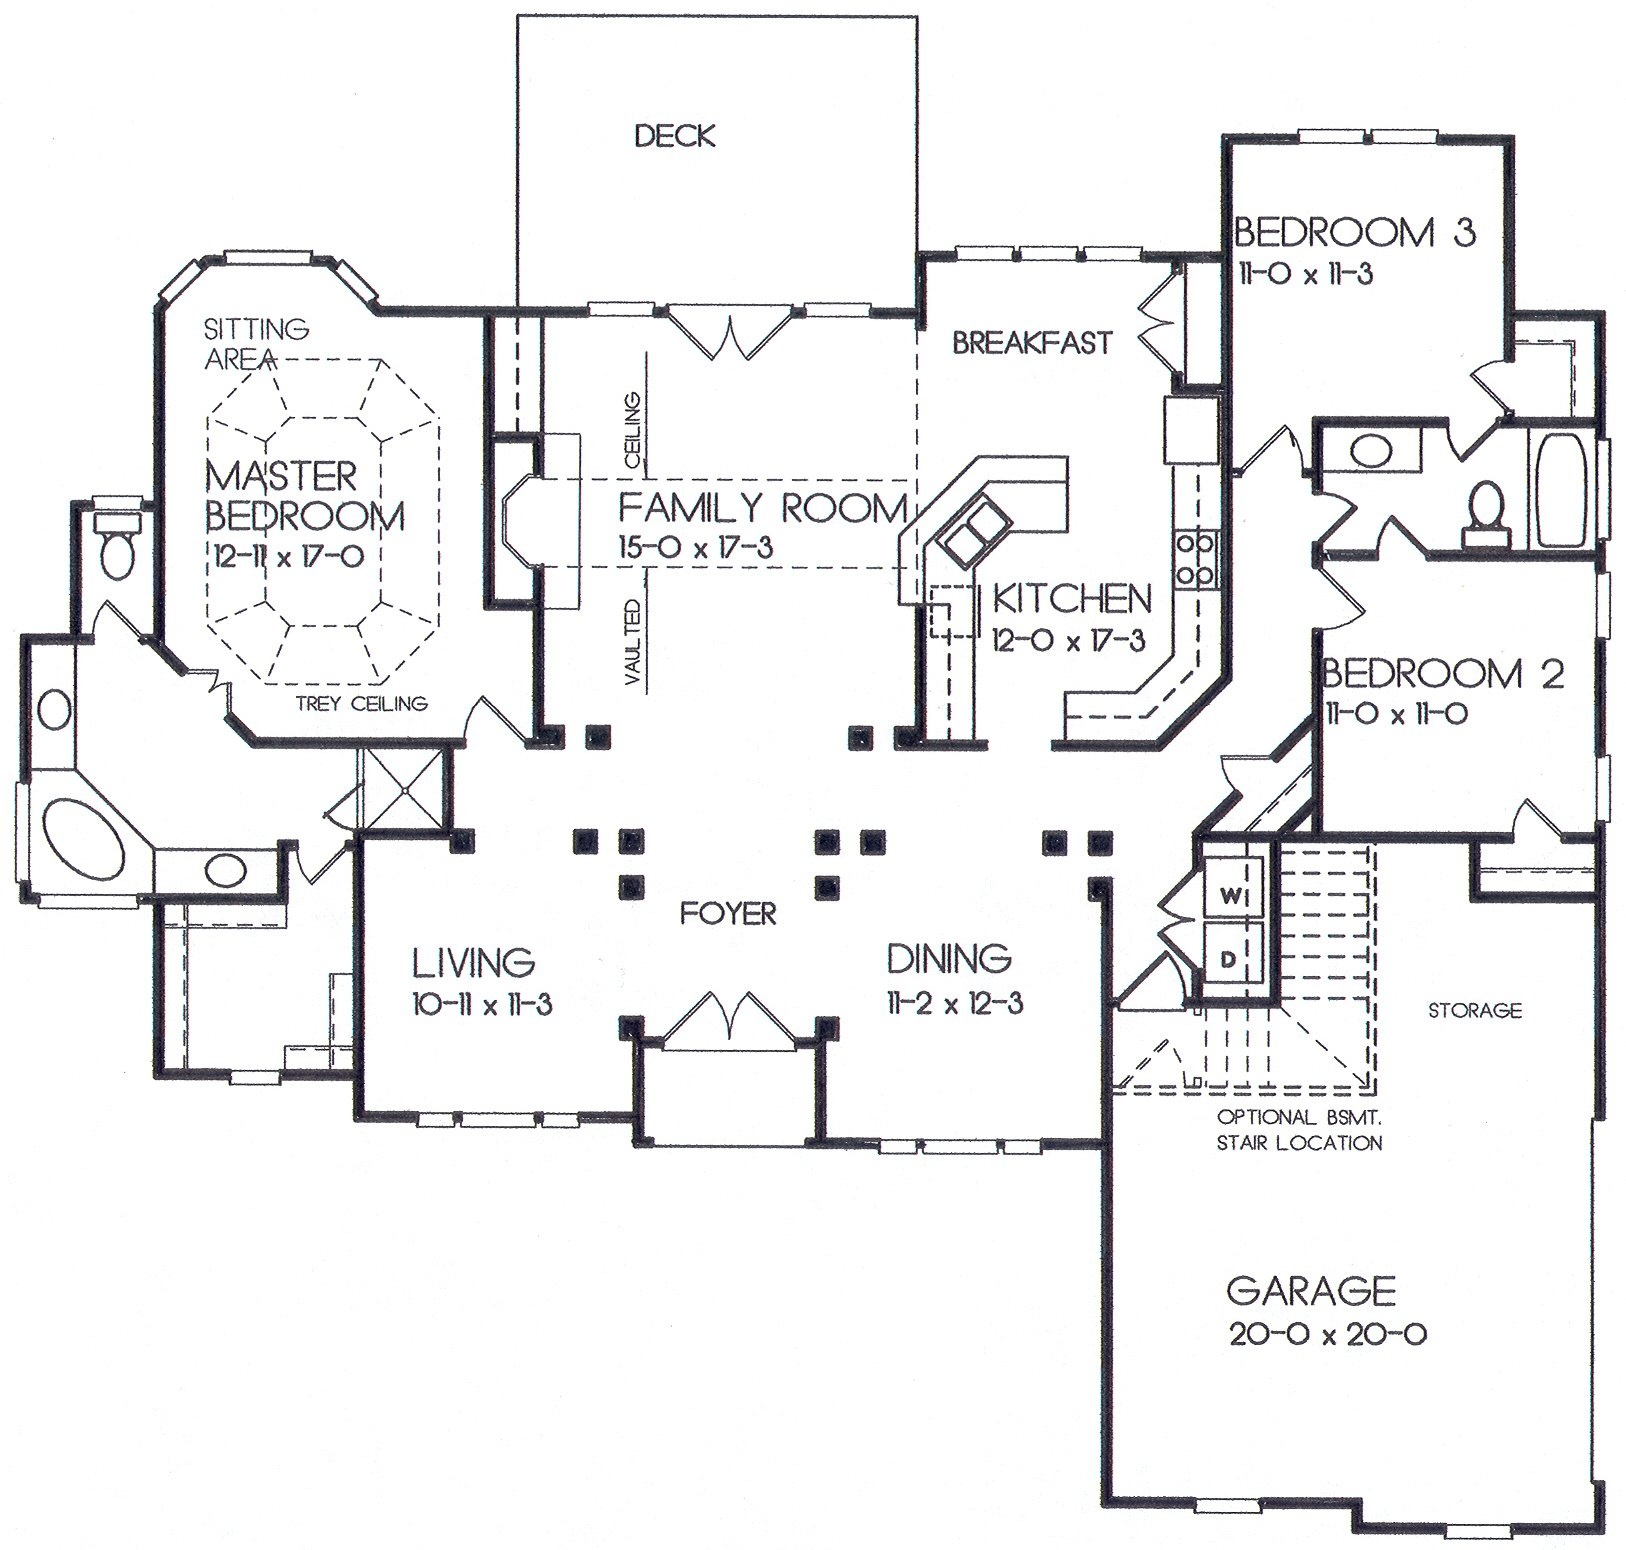 18-30 floor plan